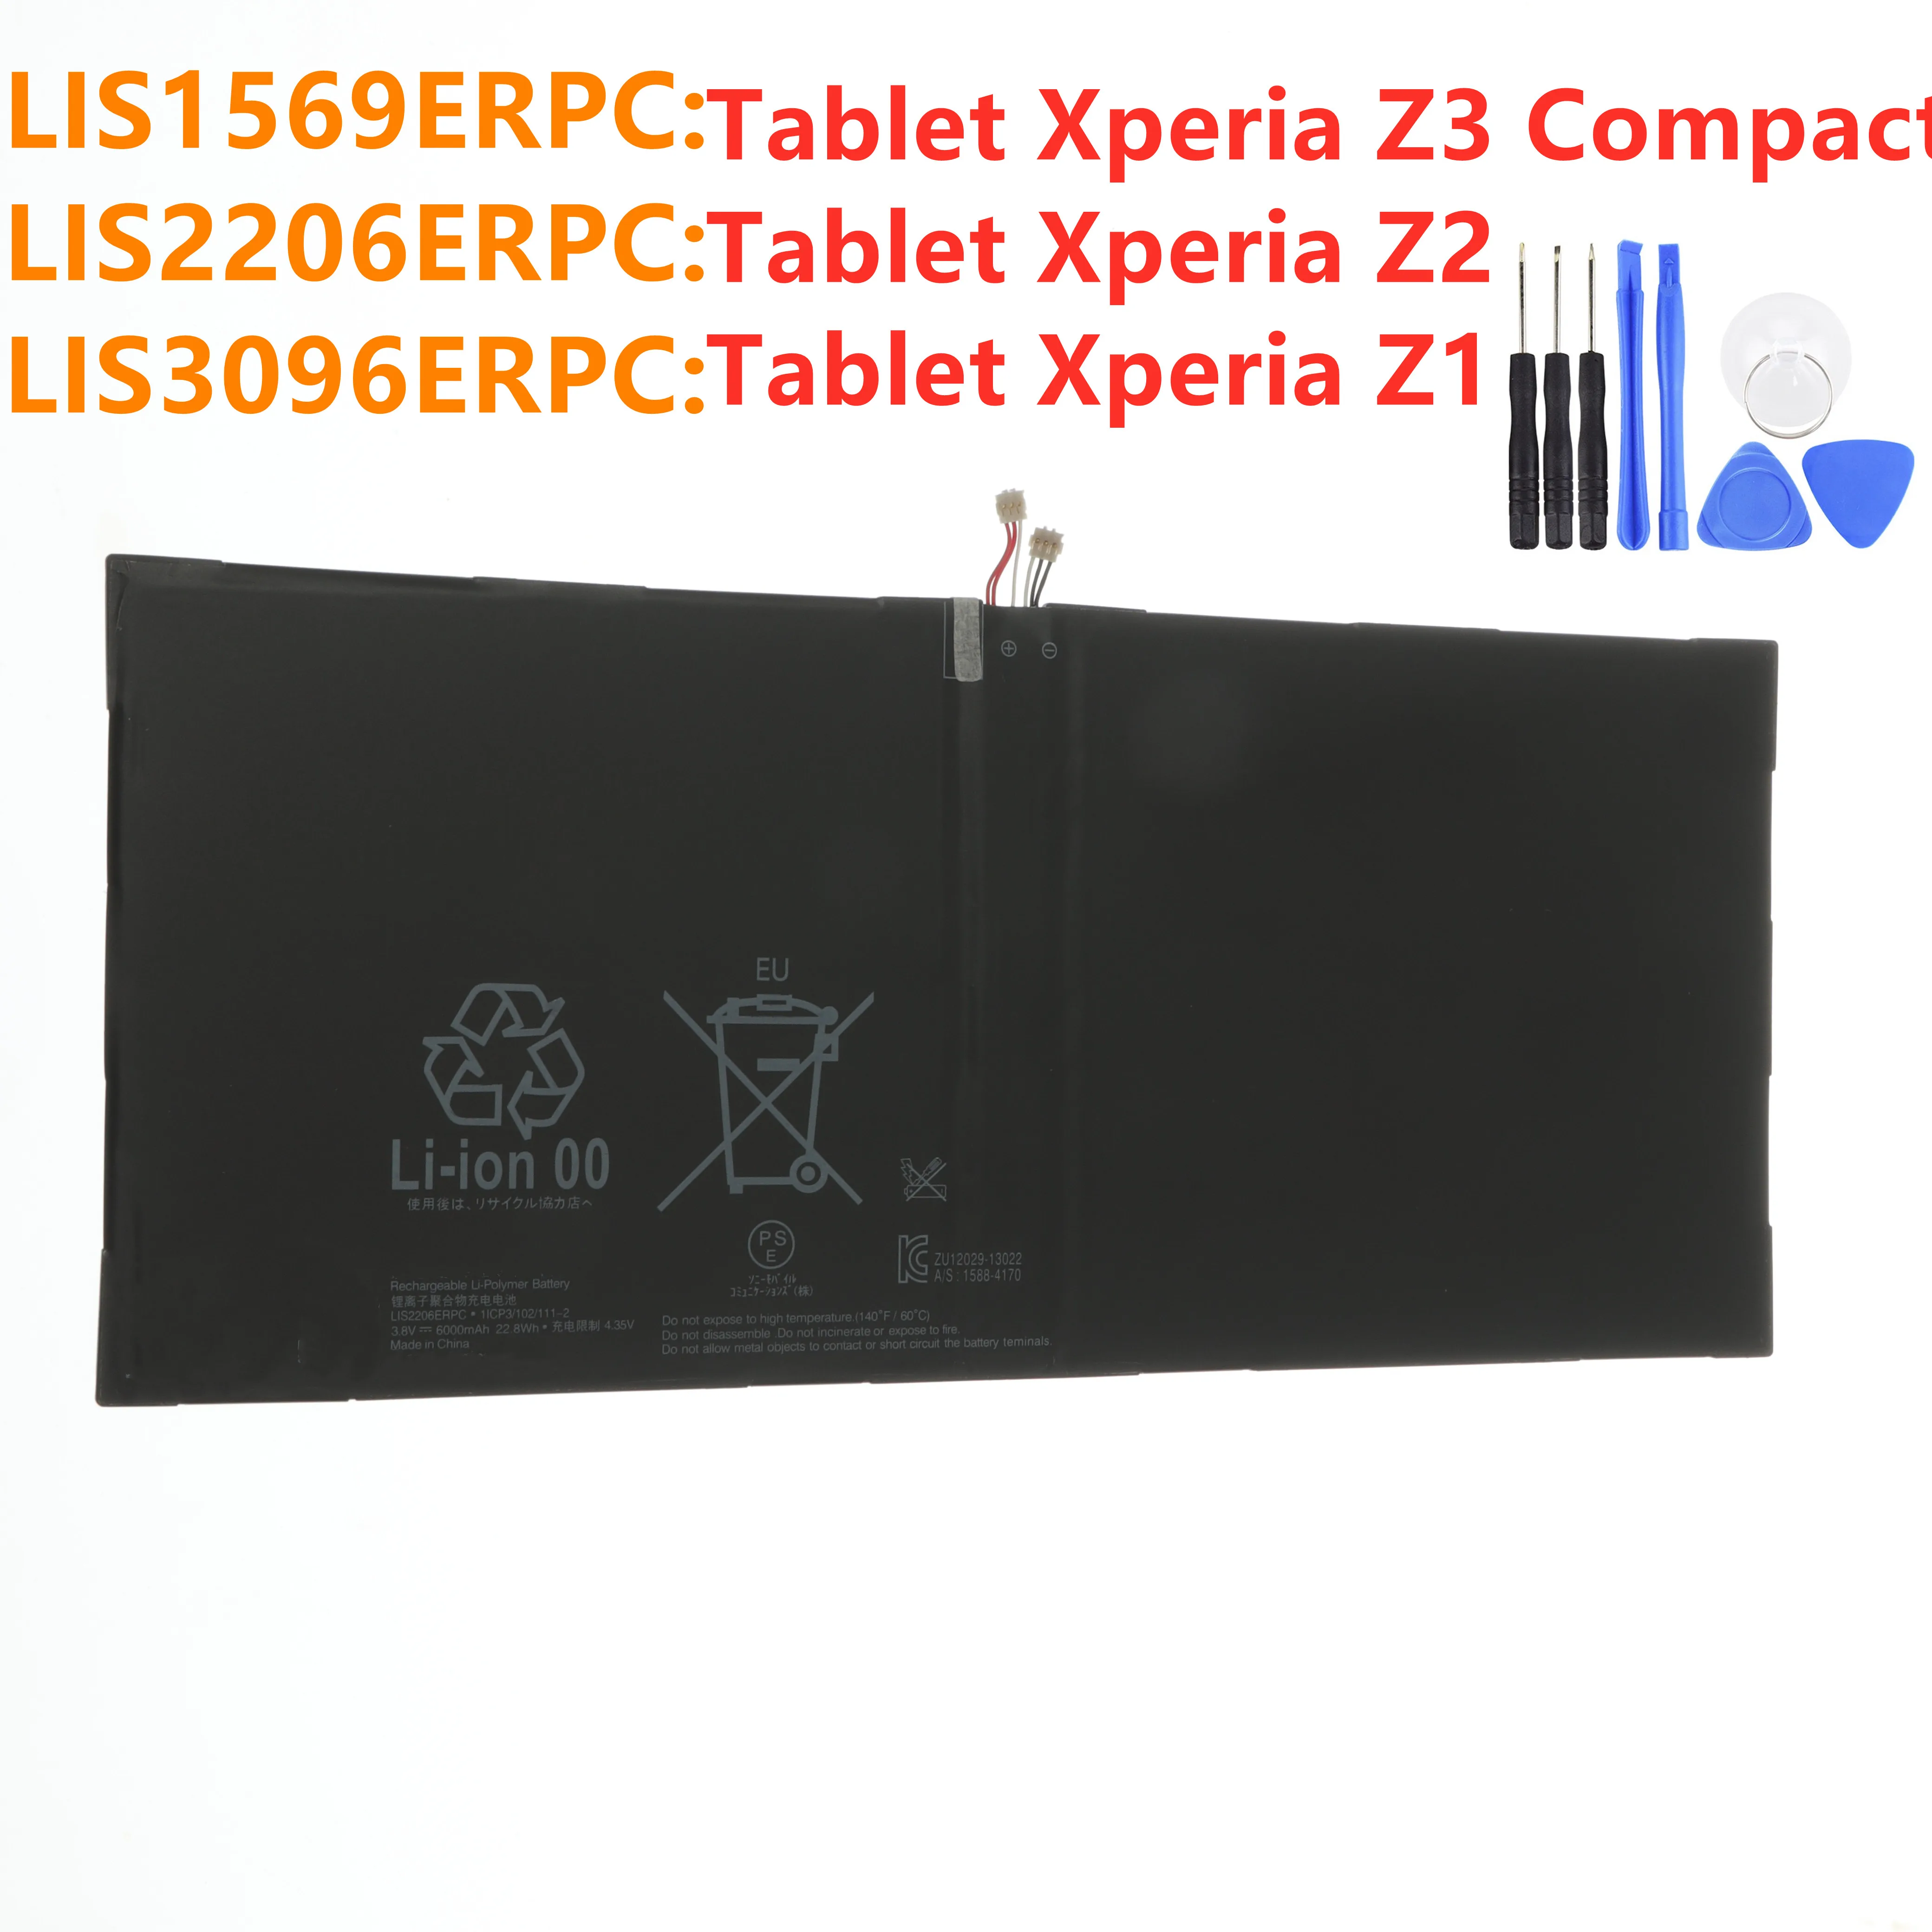 Аккумулятор LIS2206ERPC для SONY Xperia Tablet Z2 SGP541CN LIS1569ERPC планшета Z3 Compact LIS3096ERPC Z +